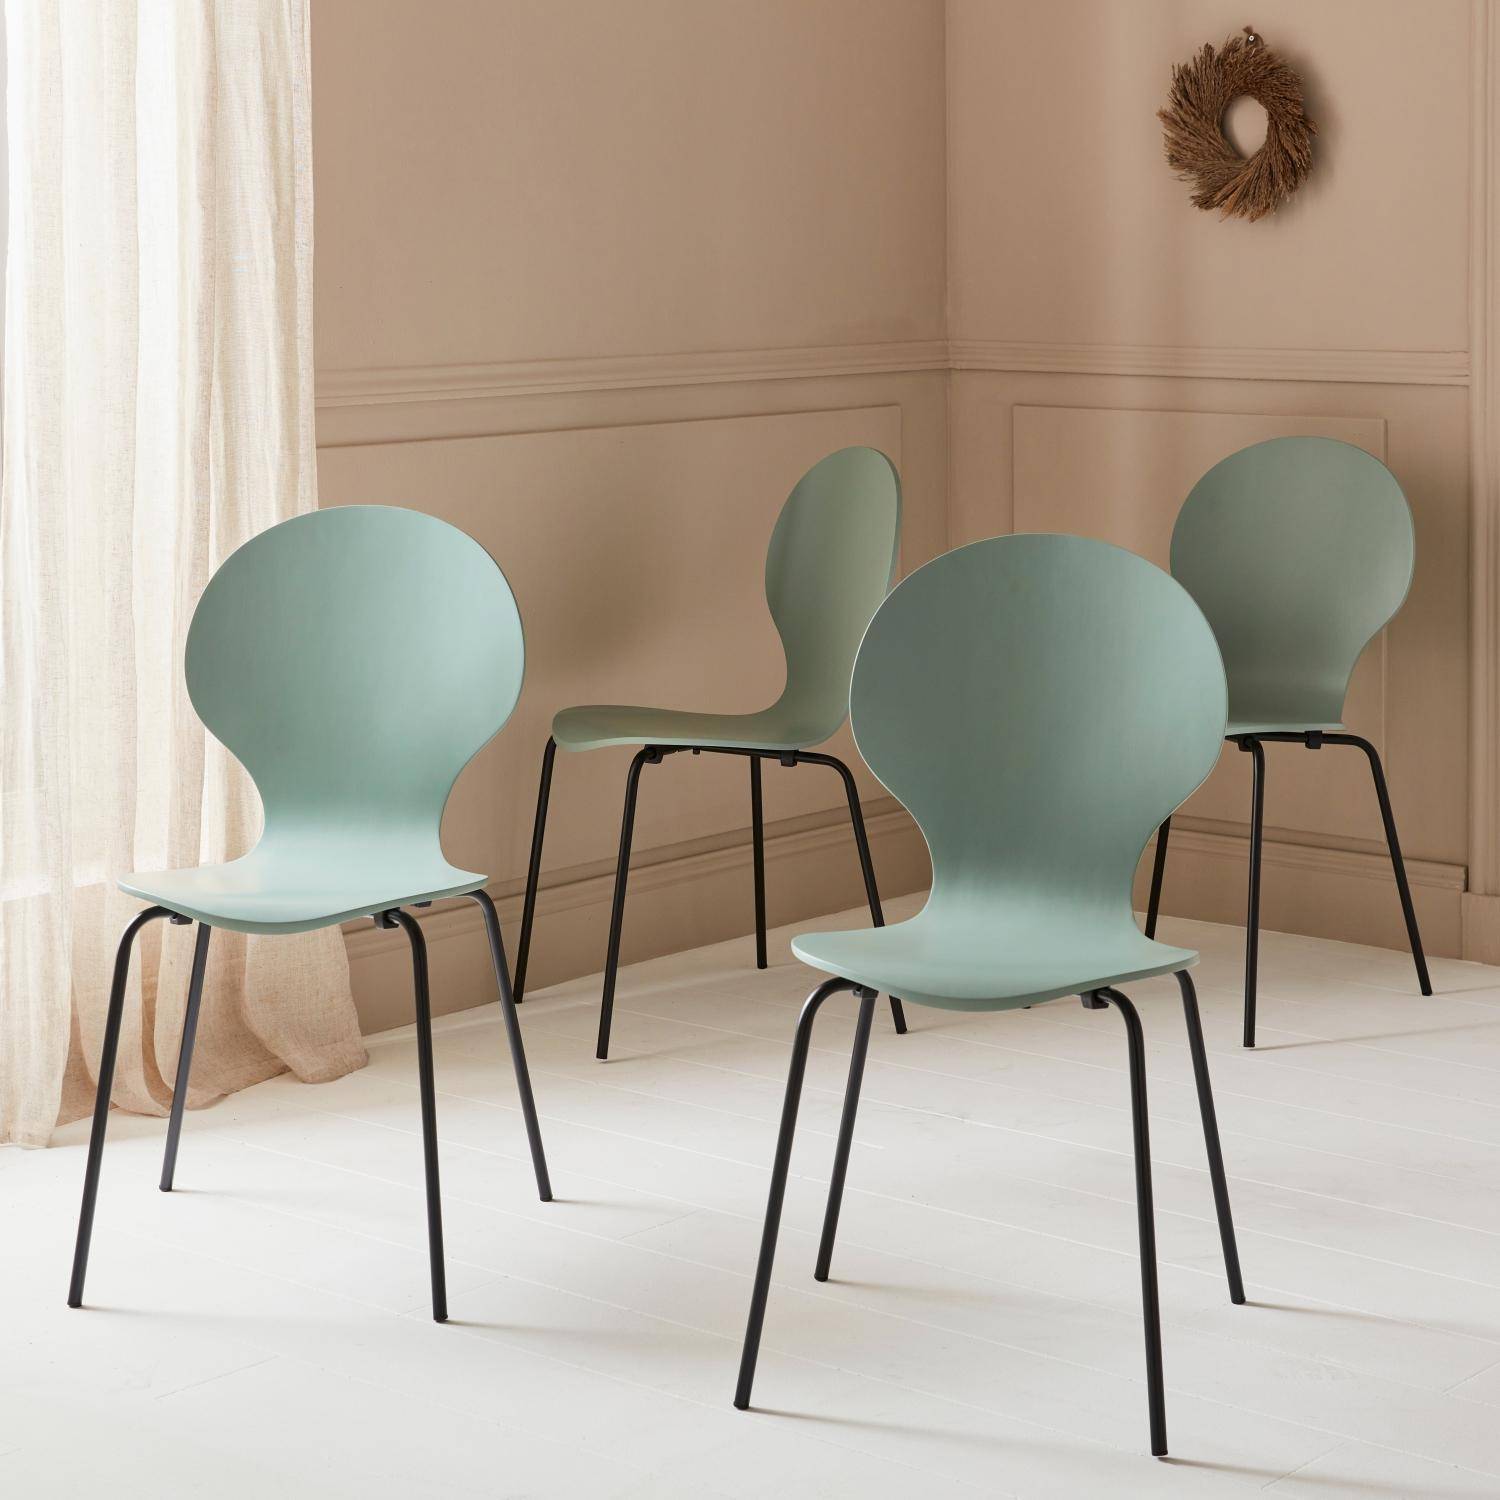 Conjunto de 4 cadeiras empilháveis retro verde celadon, madeira de seringueira e contraplacado, pernas de aço, Naomi, L 43 x P 48 x A 87 cm,sweeek,Photo7